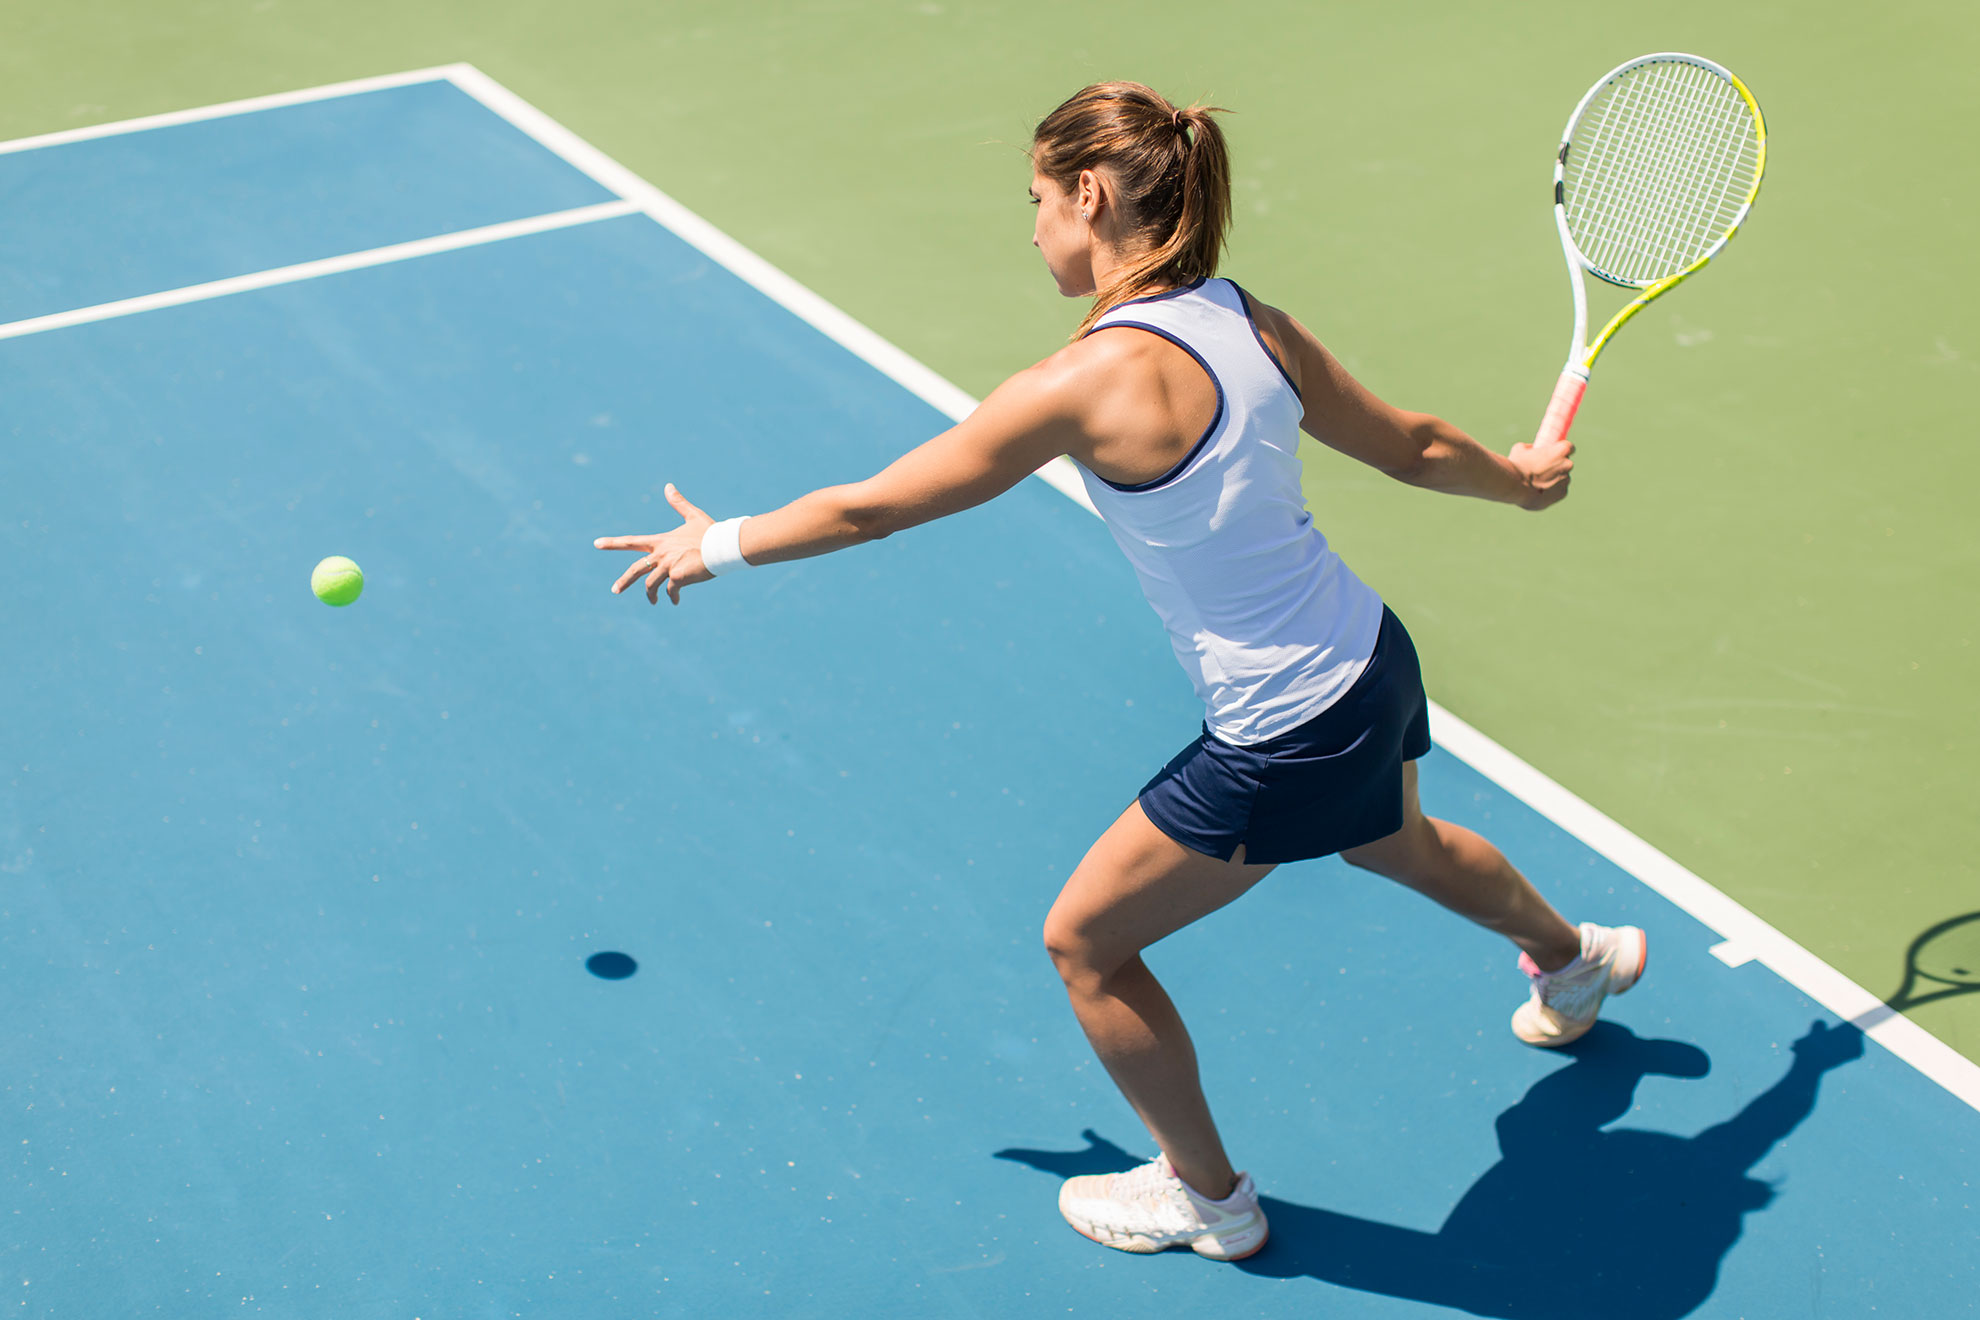 Kobieta grająca w tenisa, ilustracja do artykułu